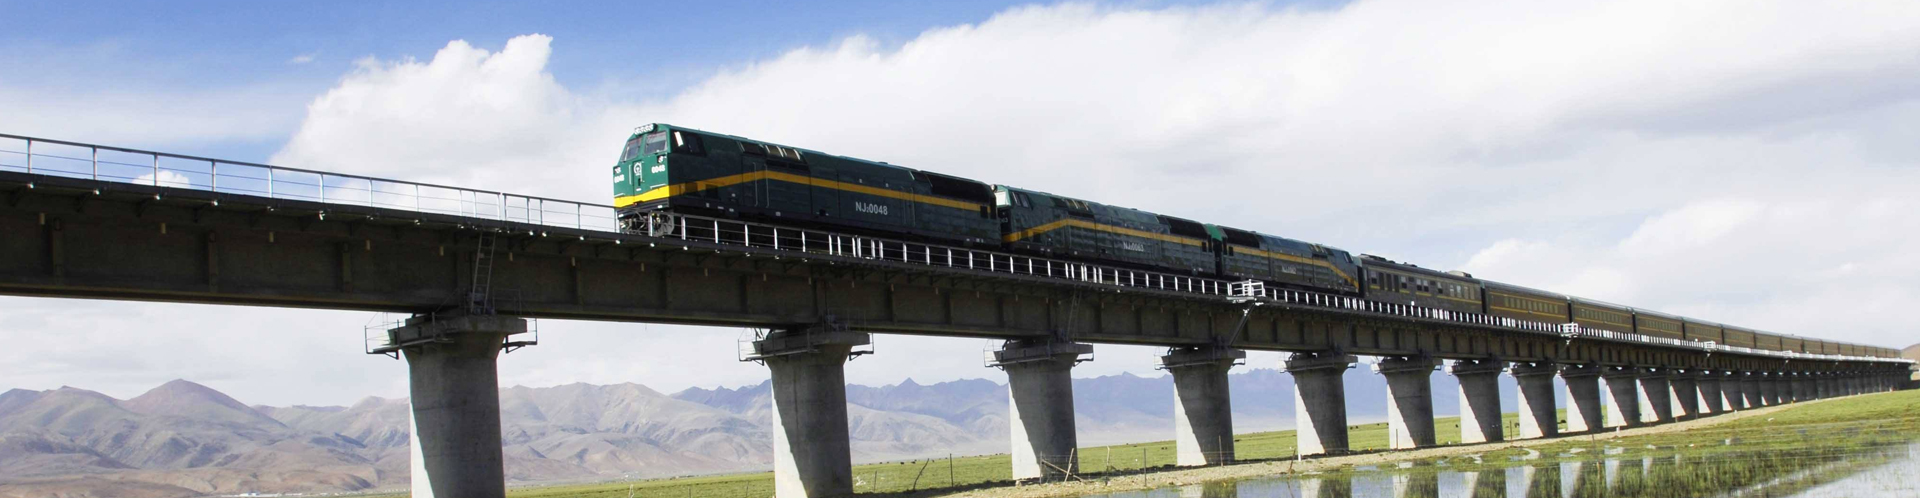 桥梁铁路非标紧固件应用方案